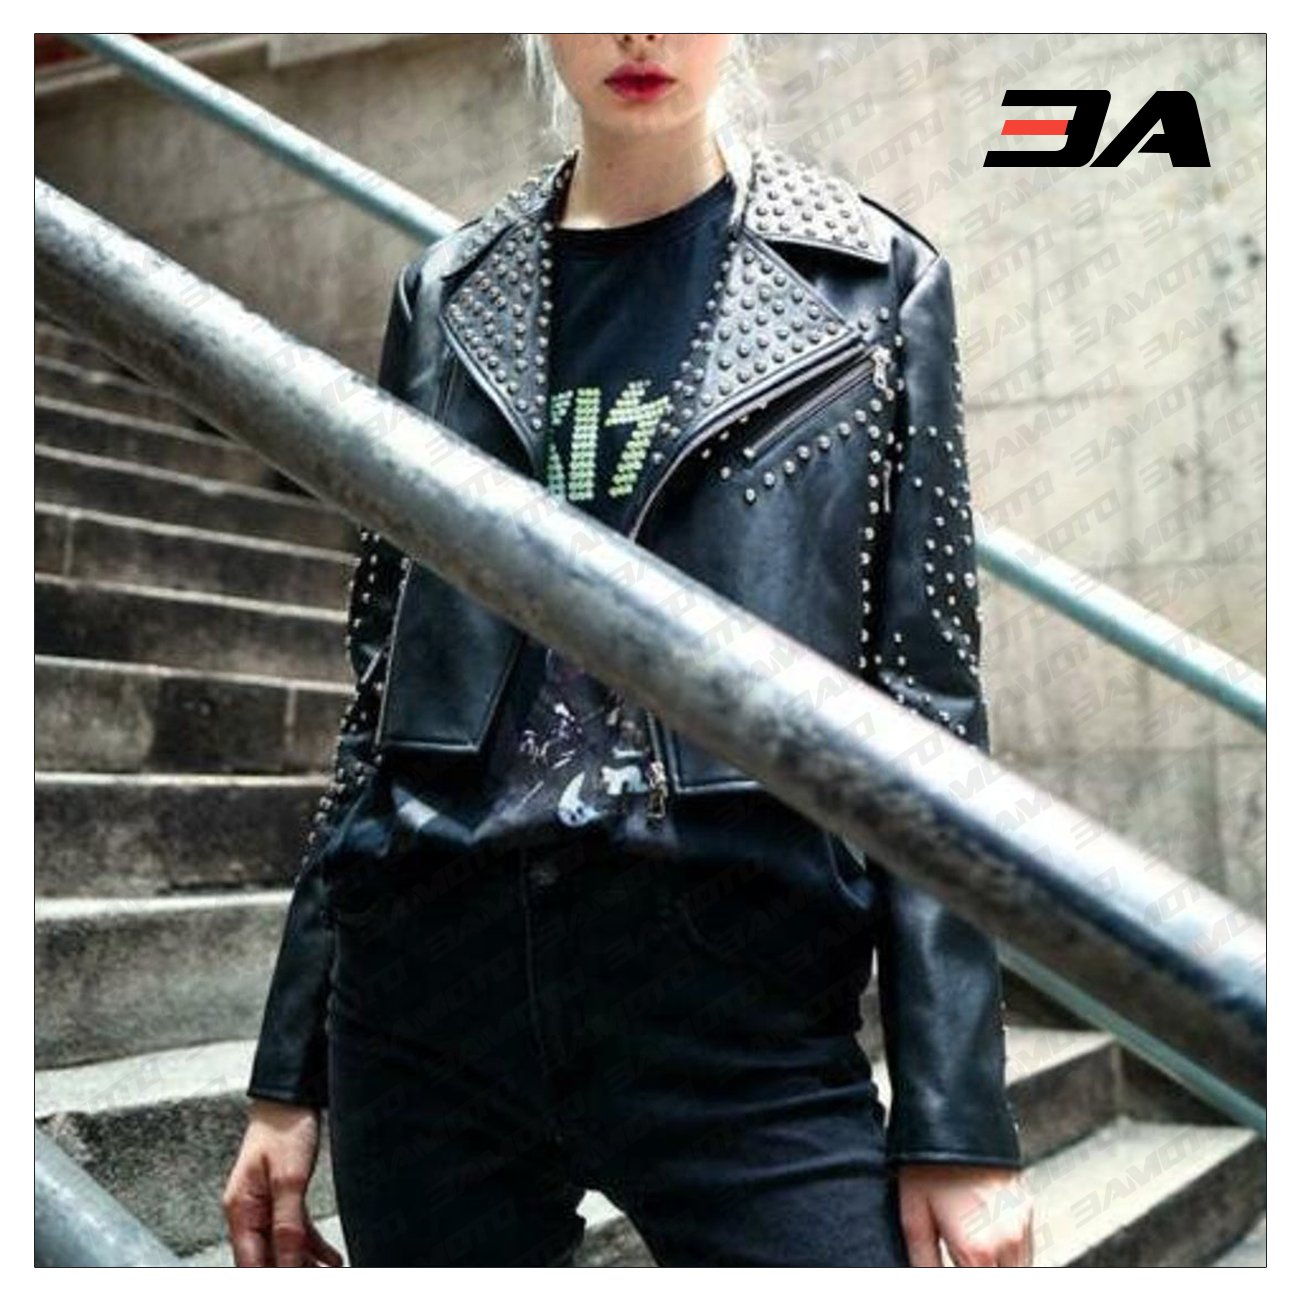 Womens Black Studded Leather Jacket - Biker Style Leather Jacket